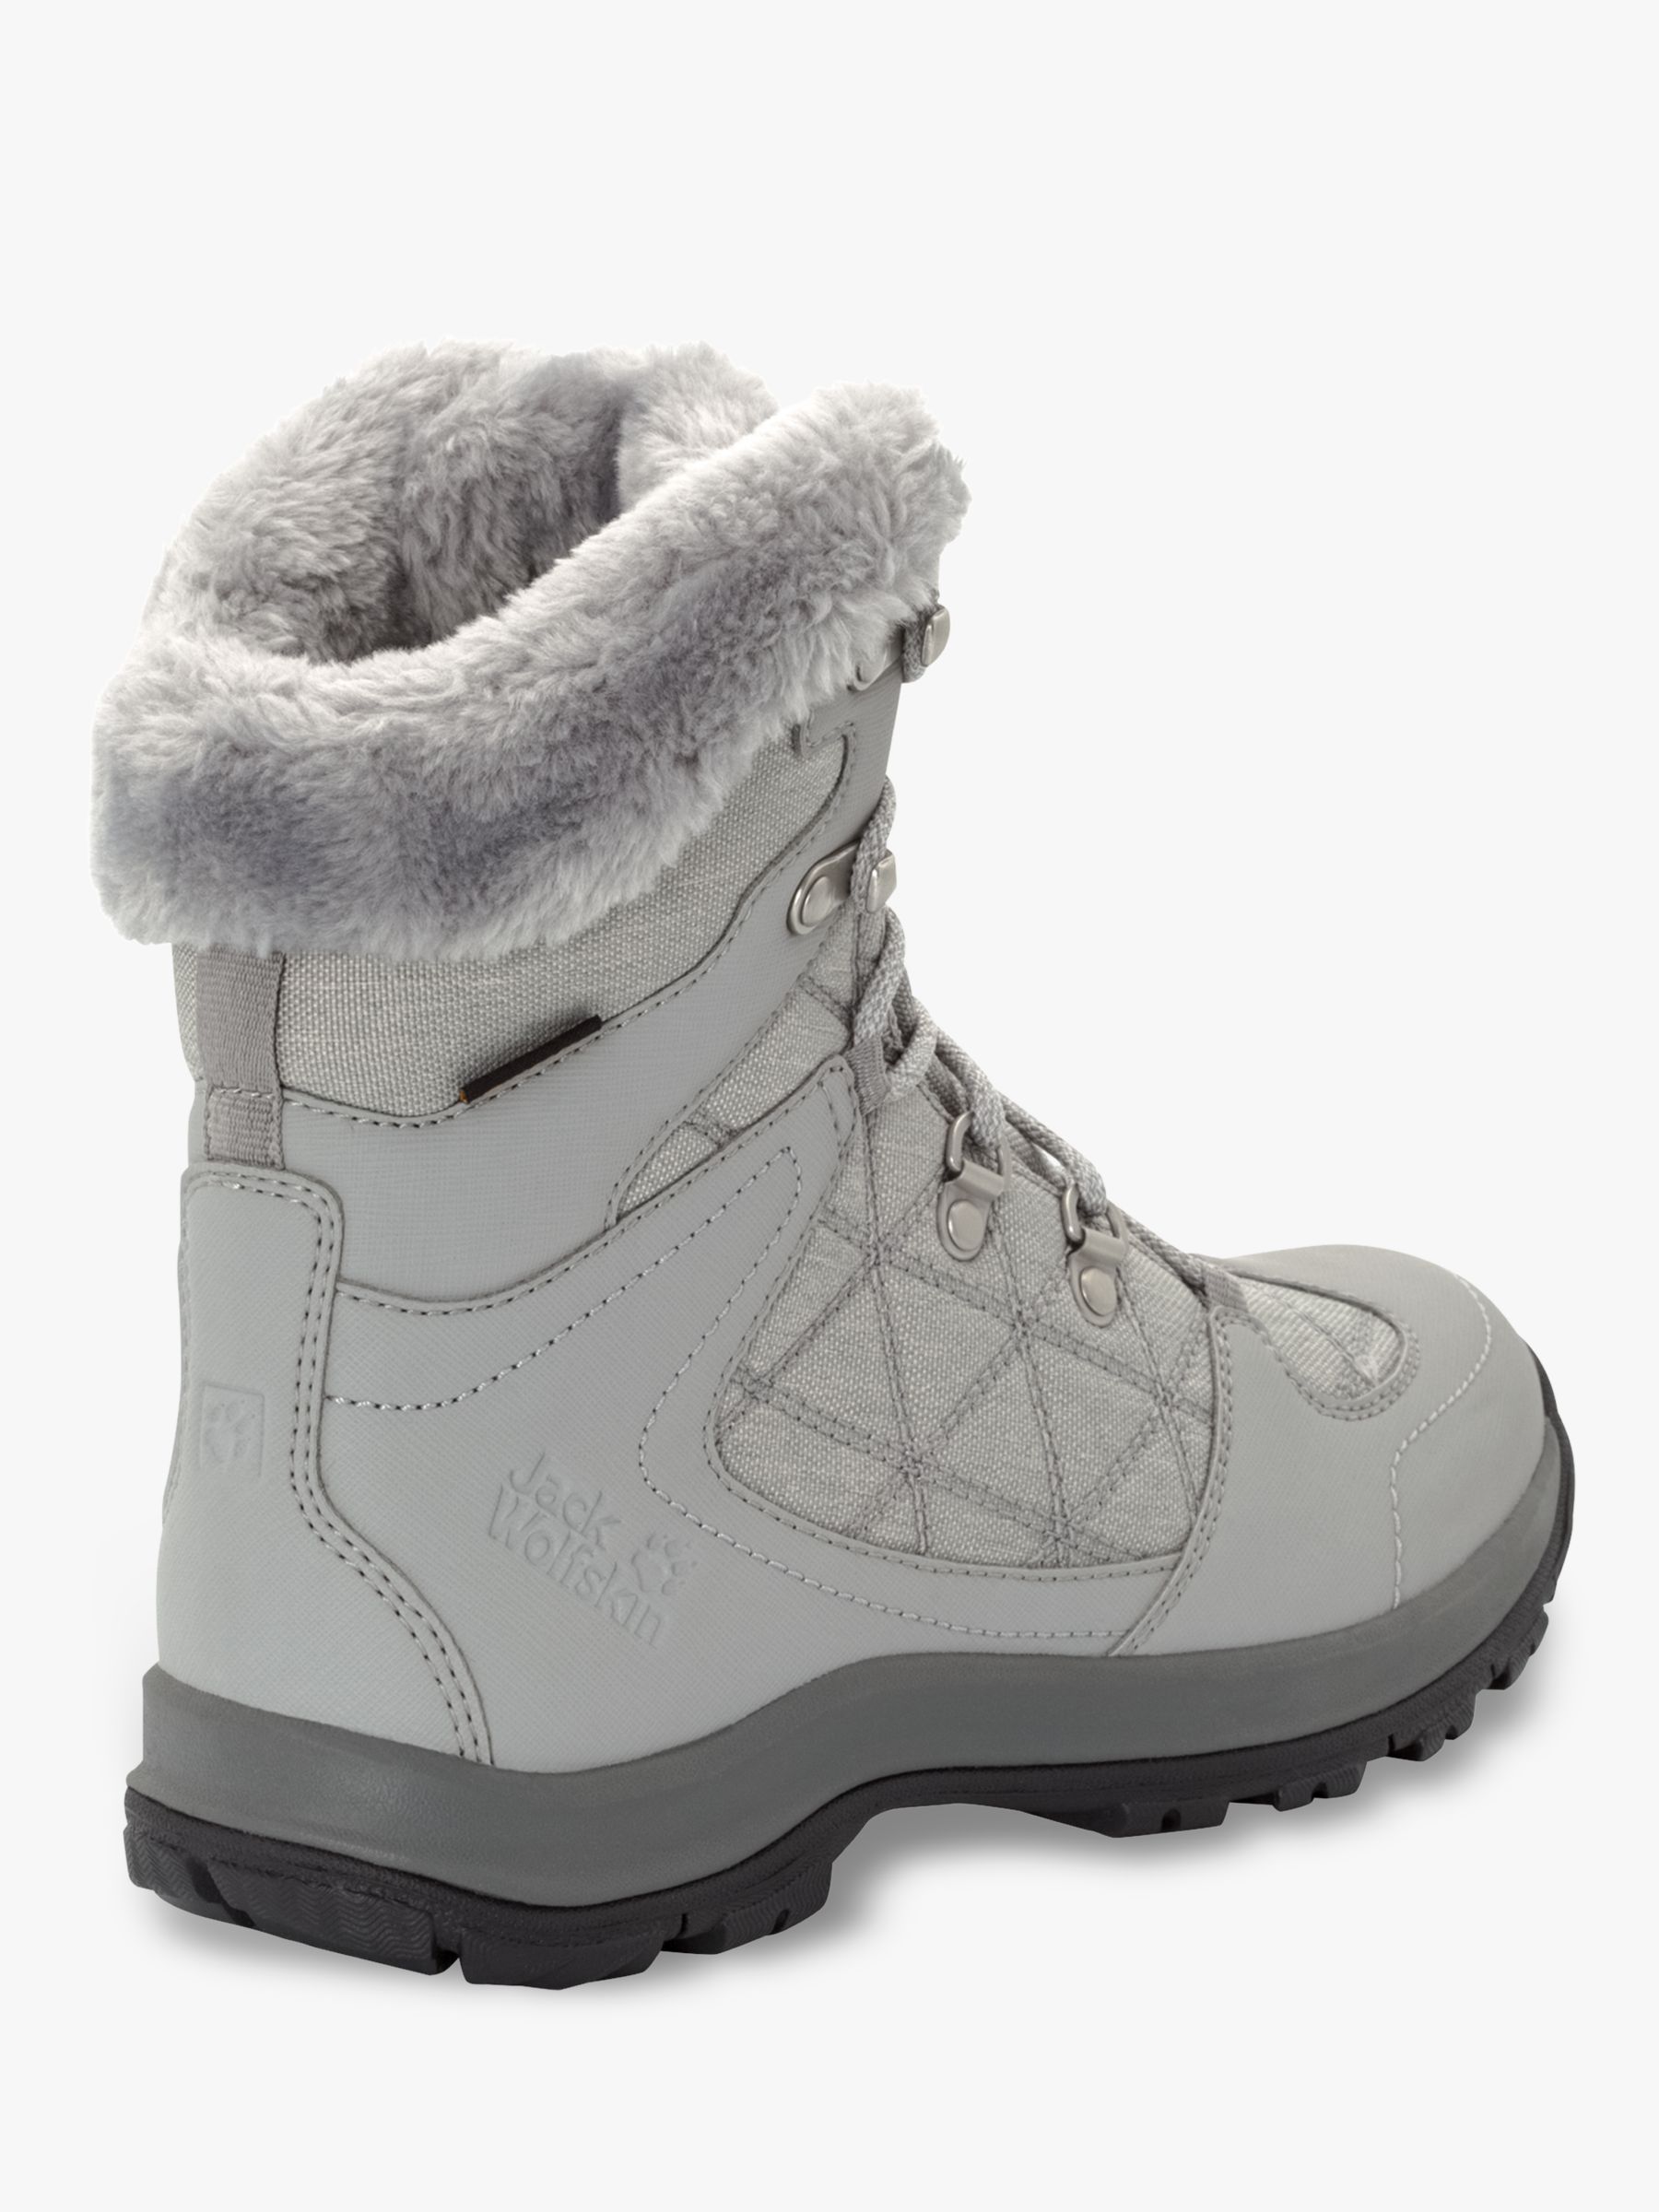 light gray womens boots